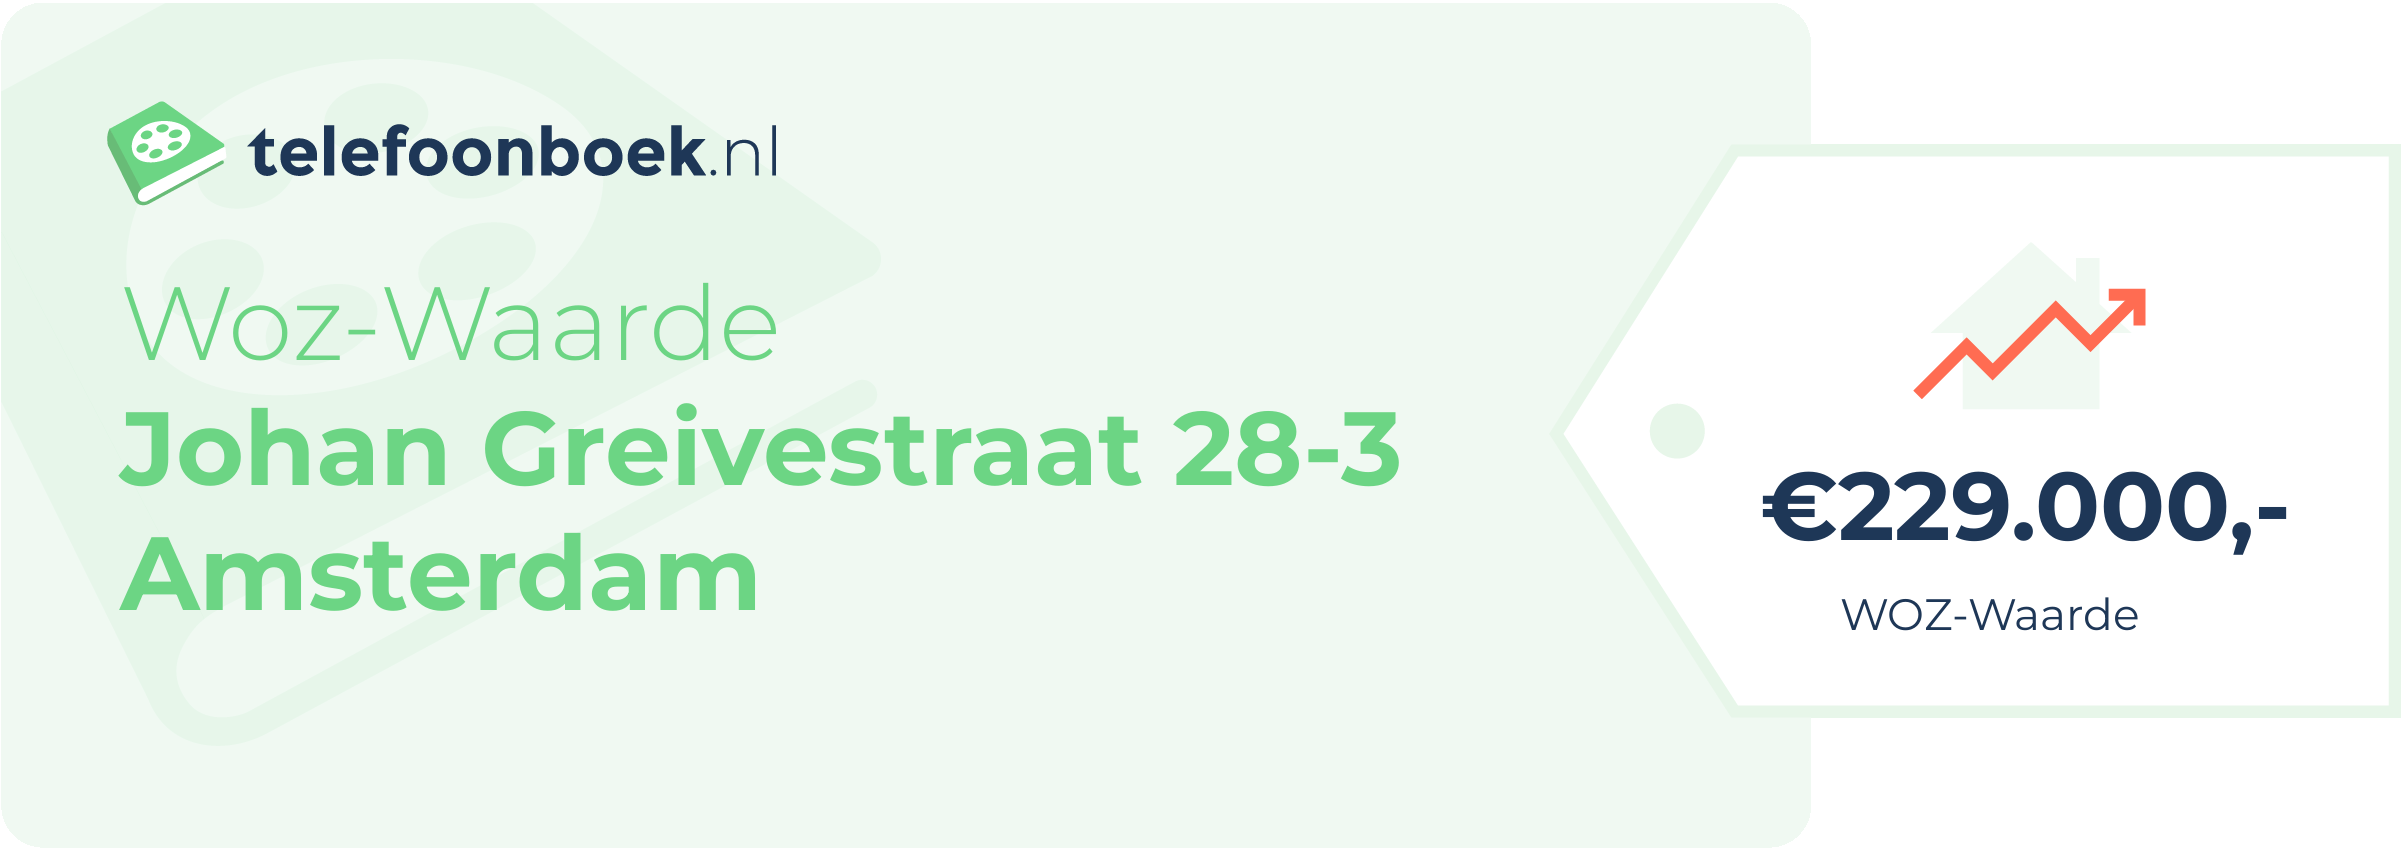 WOZ-waarde Johan Greivestraat 28-3 Amsterdam